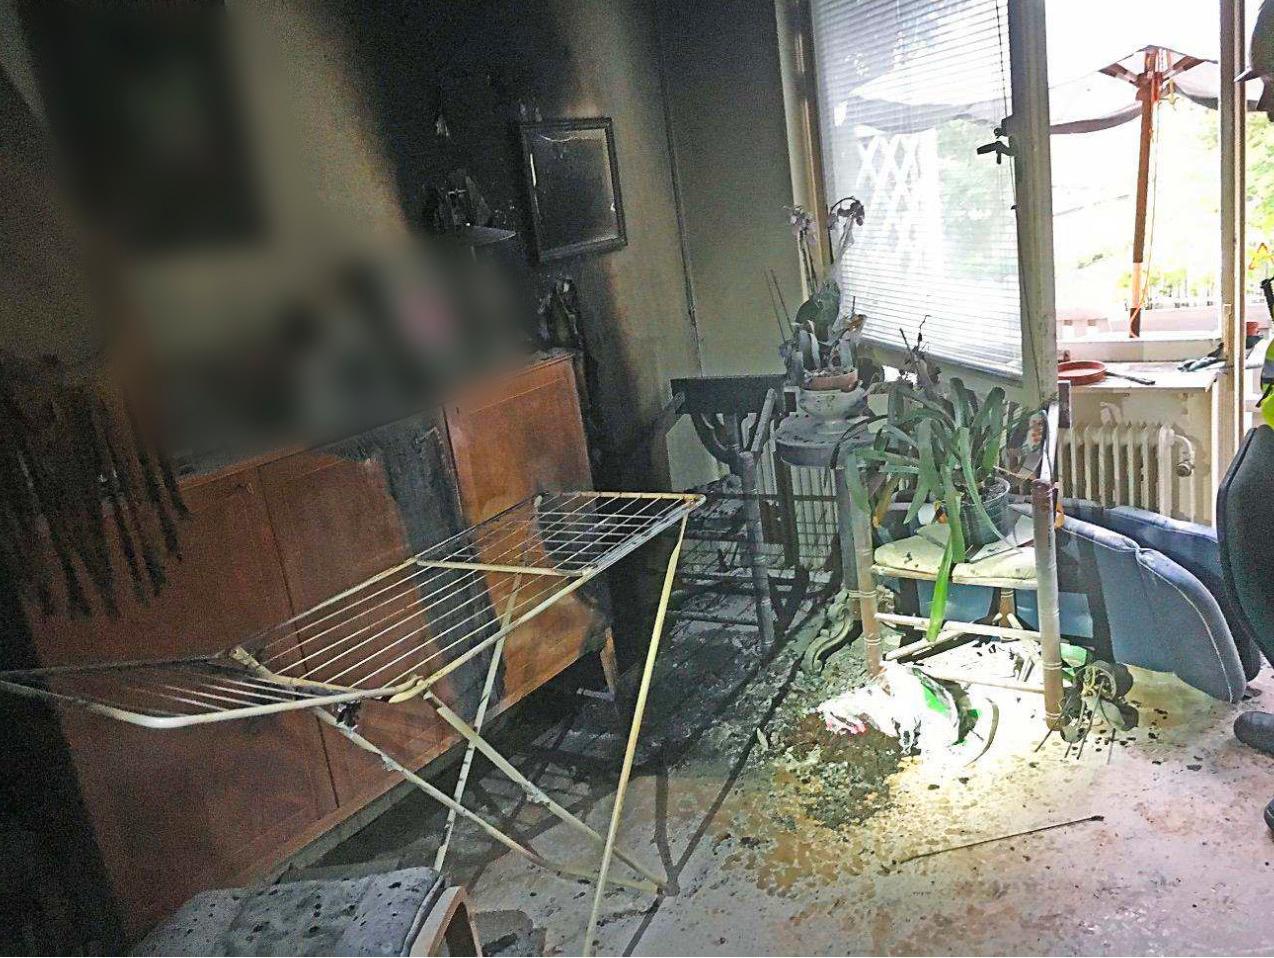 När den 73-åriga kvinnan kom ut i vardagsrummet såg det ut som ”en orm som brann”. Hon räddades precis innan bostaden blev övertänd.